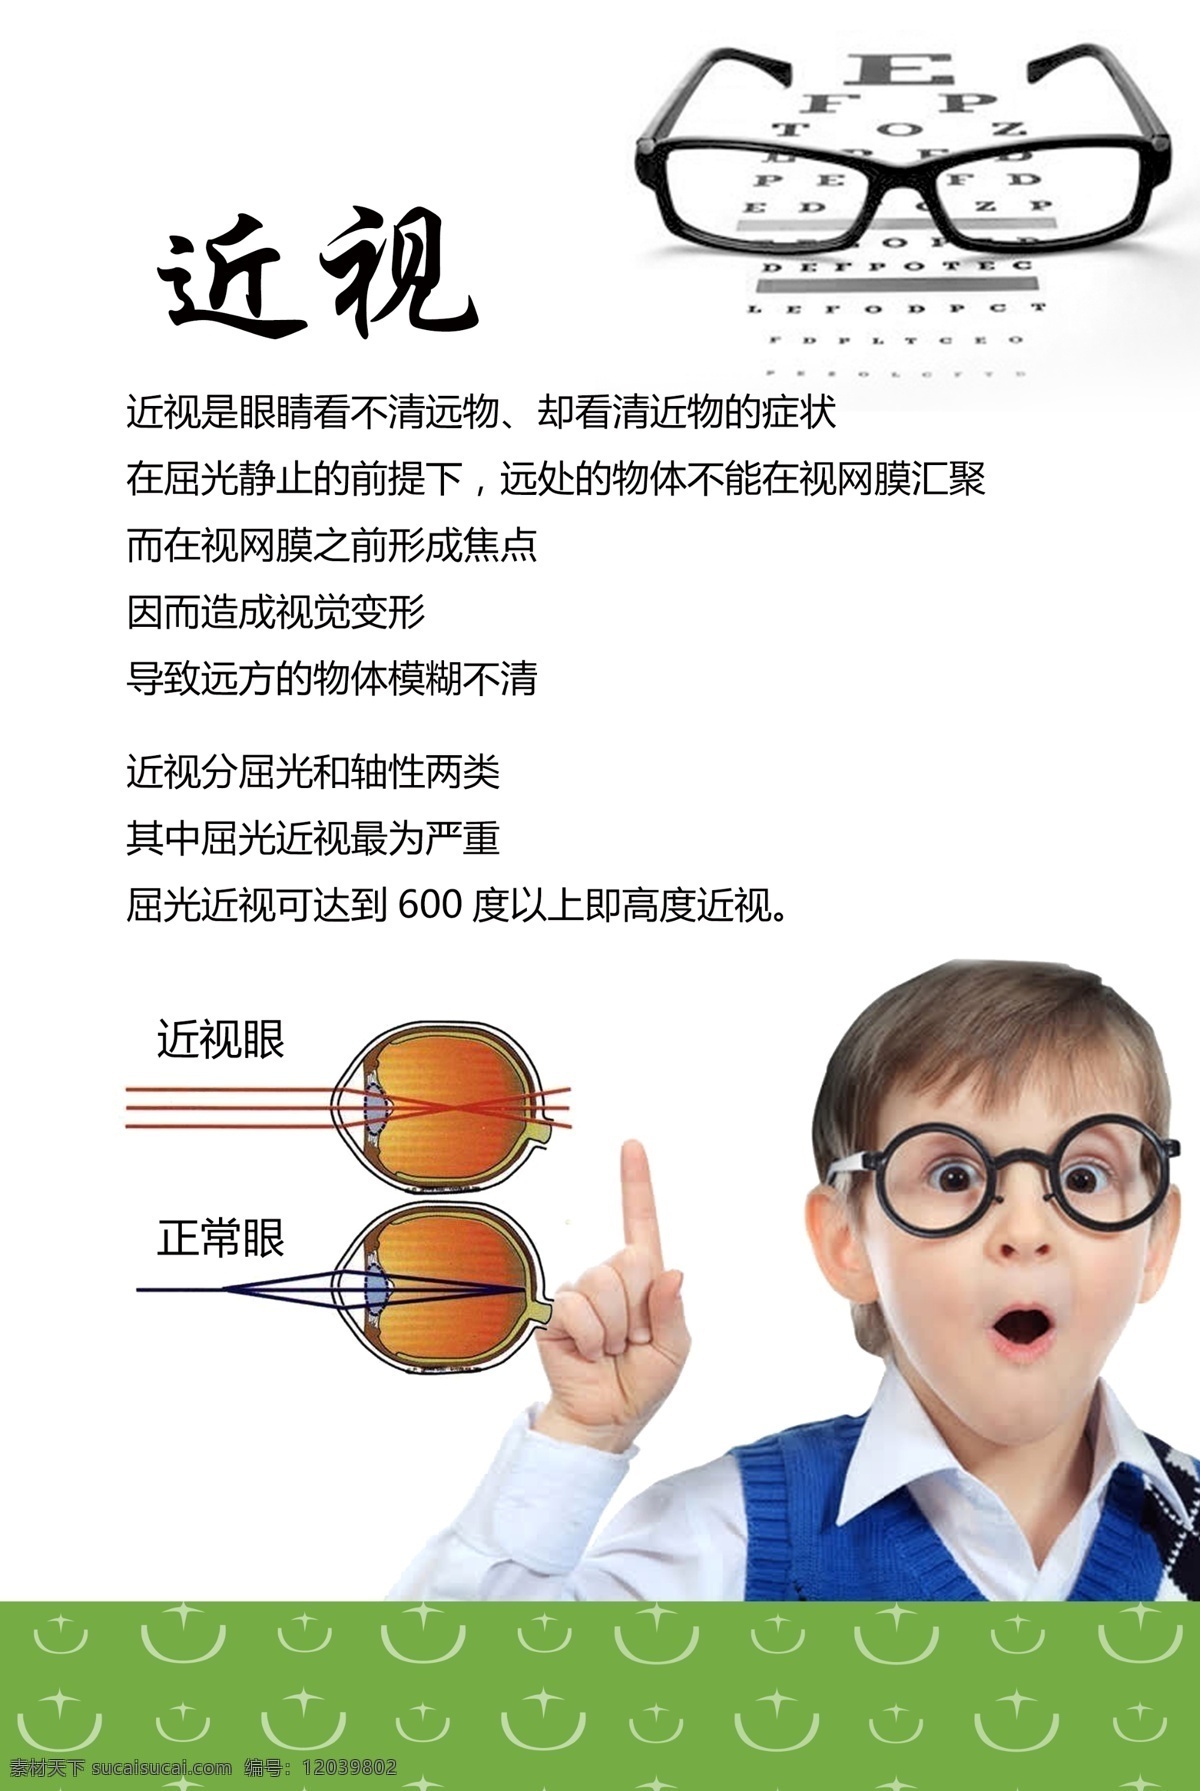 什么是近视 近视 远视 眼睛 保护视力 绿色 大图 海报 展板 爱护眼睛 眼镜店 斜视 散光 配眼镜 视力 近视眼 正常眼 视力保健